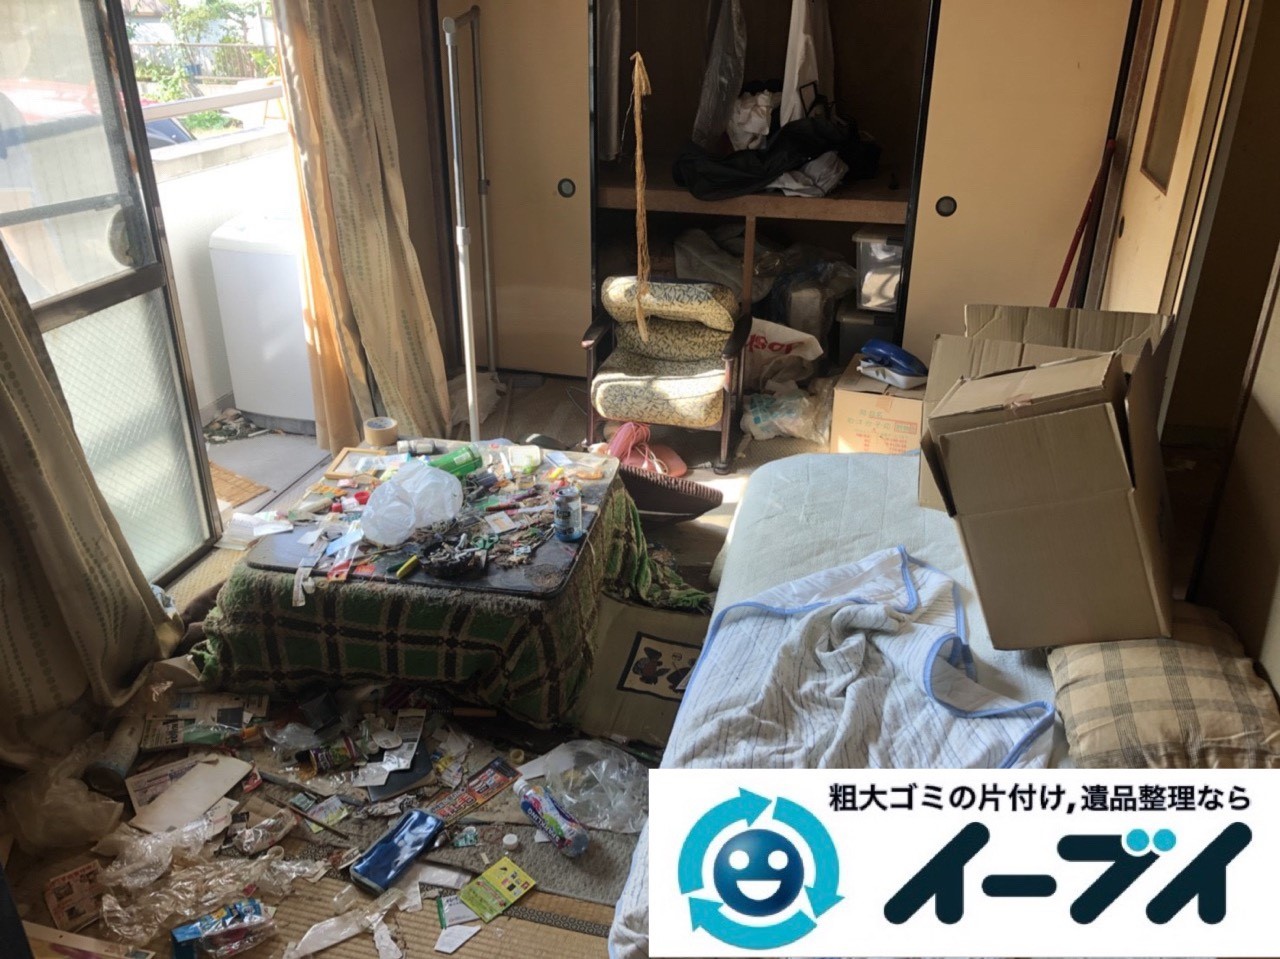 2019年1月6日大阪府大阪市大正区でコタツや生活用品に溢れた部屋の片付け作業。写真1